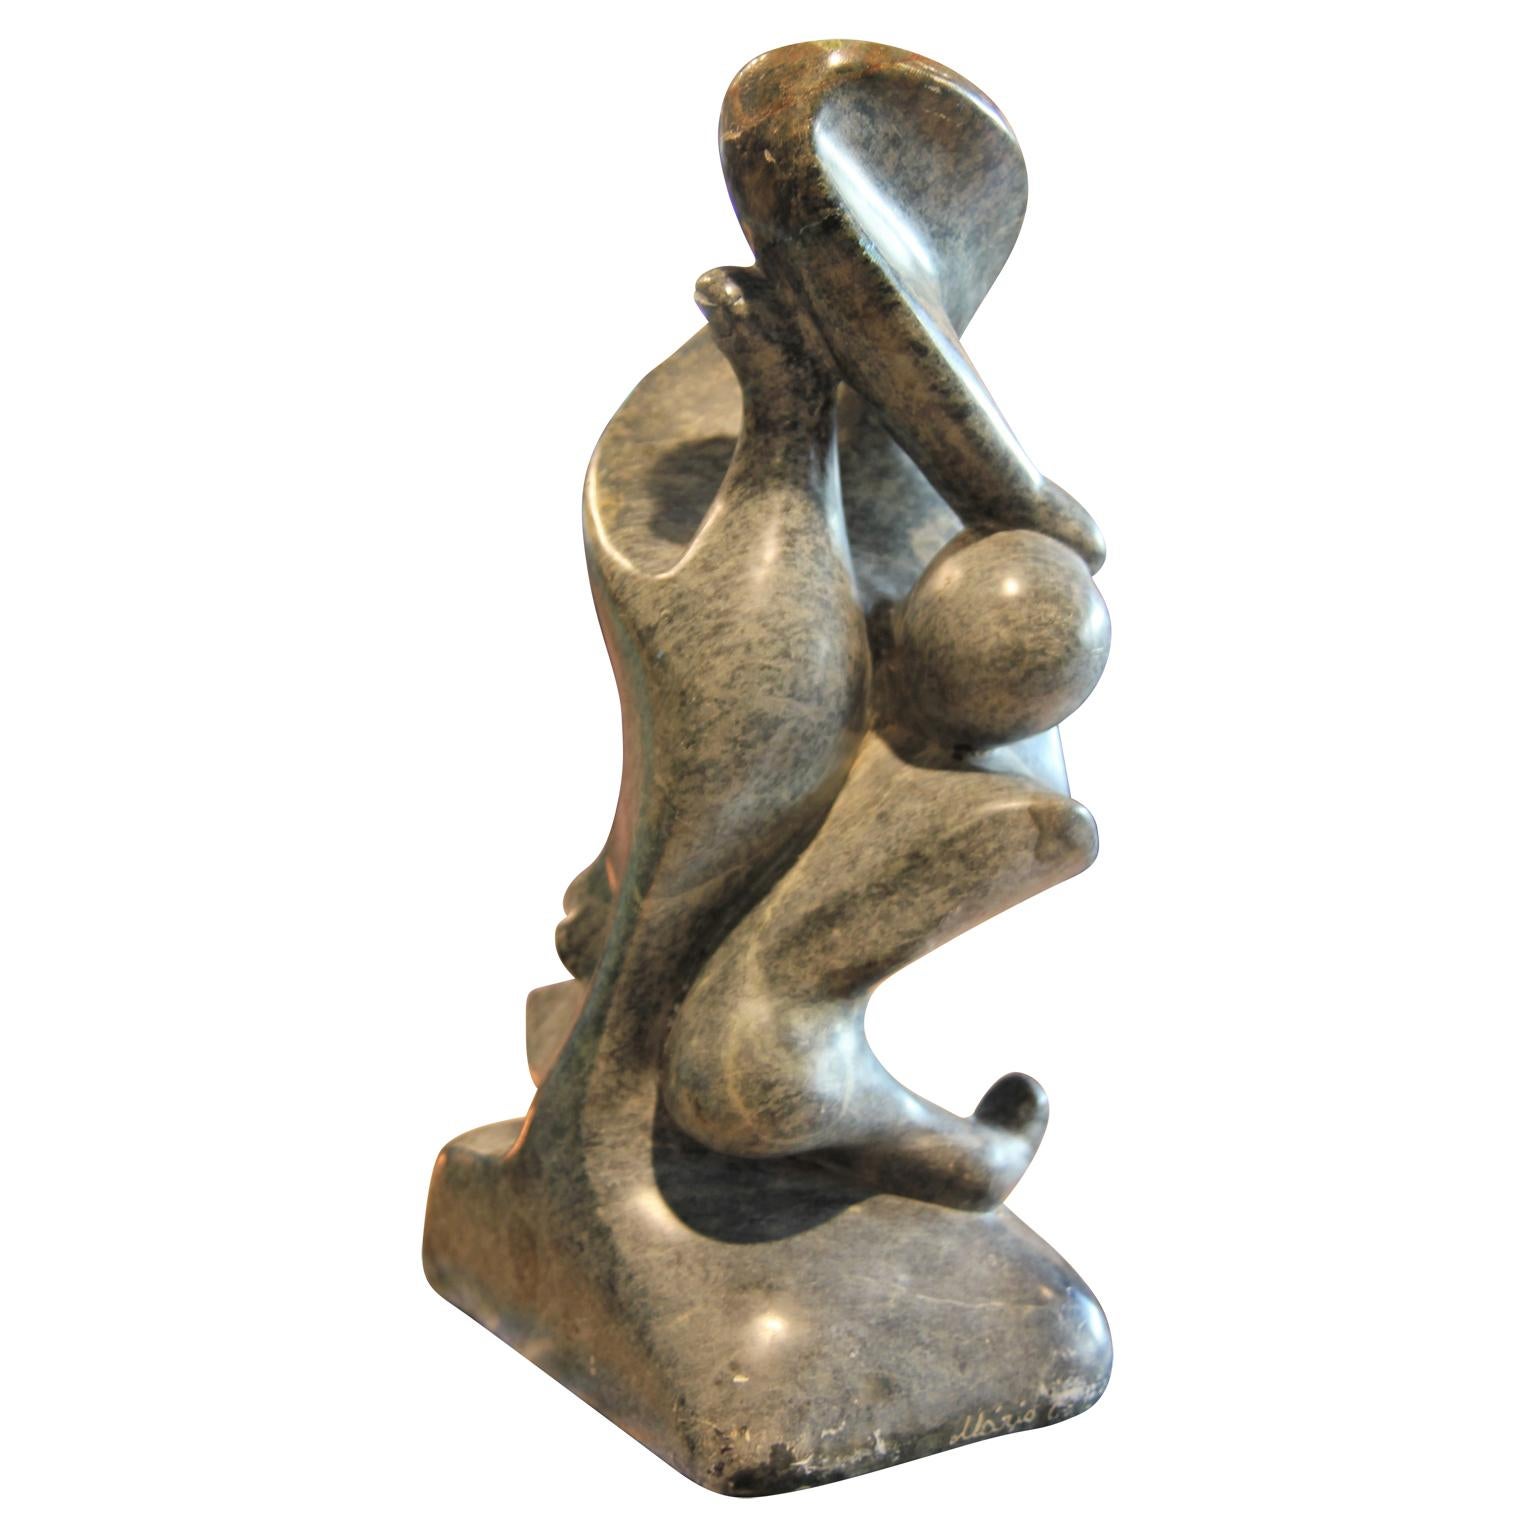 Abstrakte figurative Skulptur aus grauem Marmor, die verschiedene menschliche Anhängsel (Nase, Füße und Finger) enthält. Der Sockel ist mit 